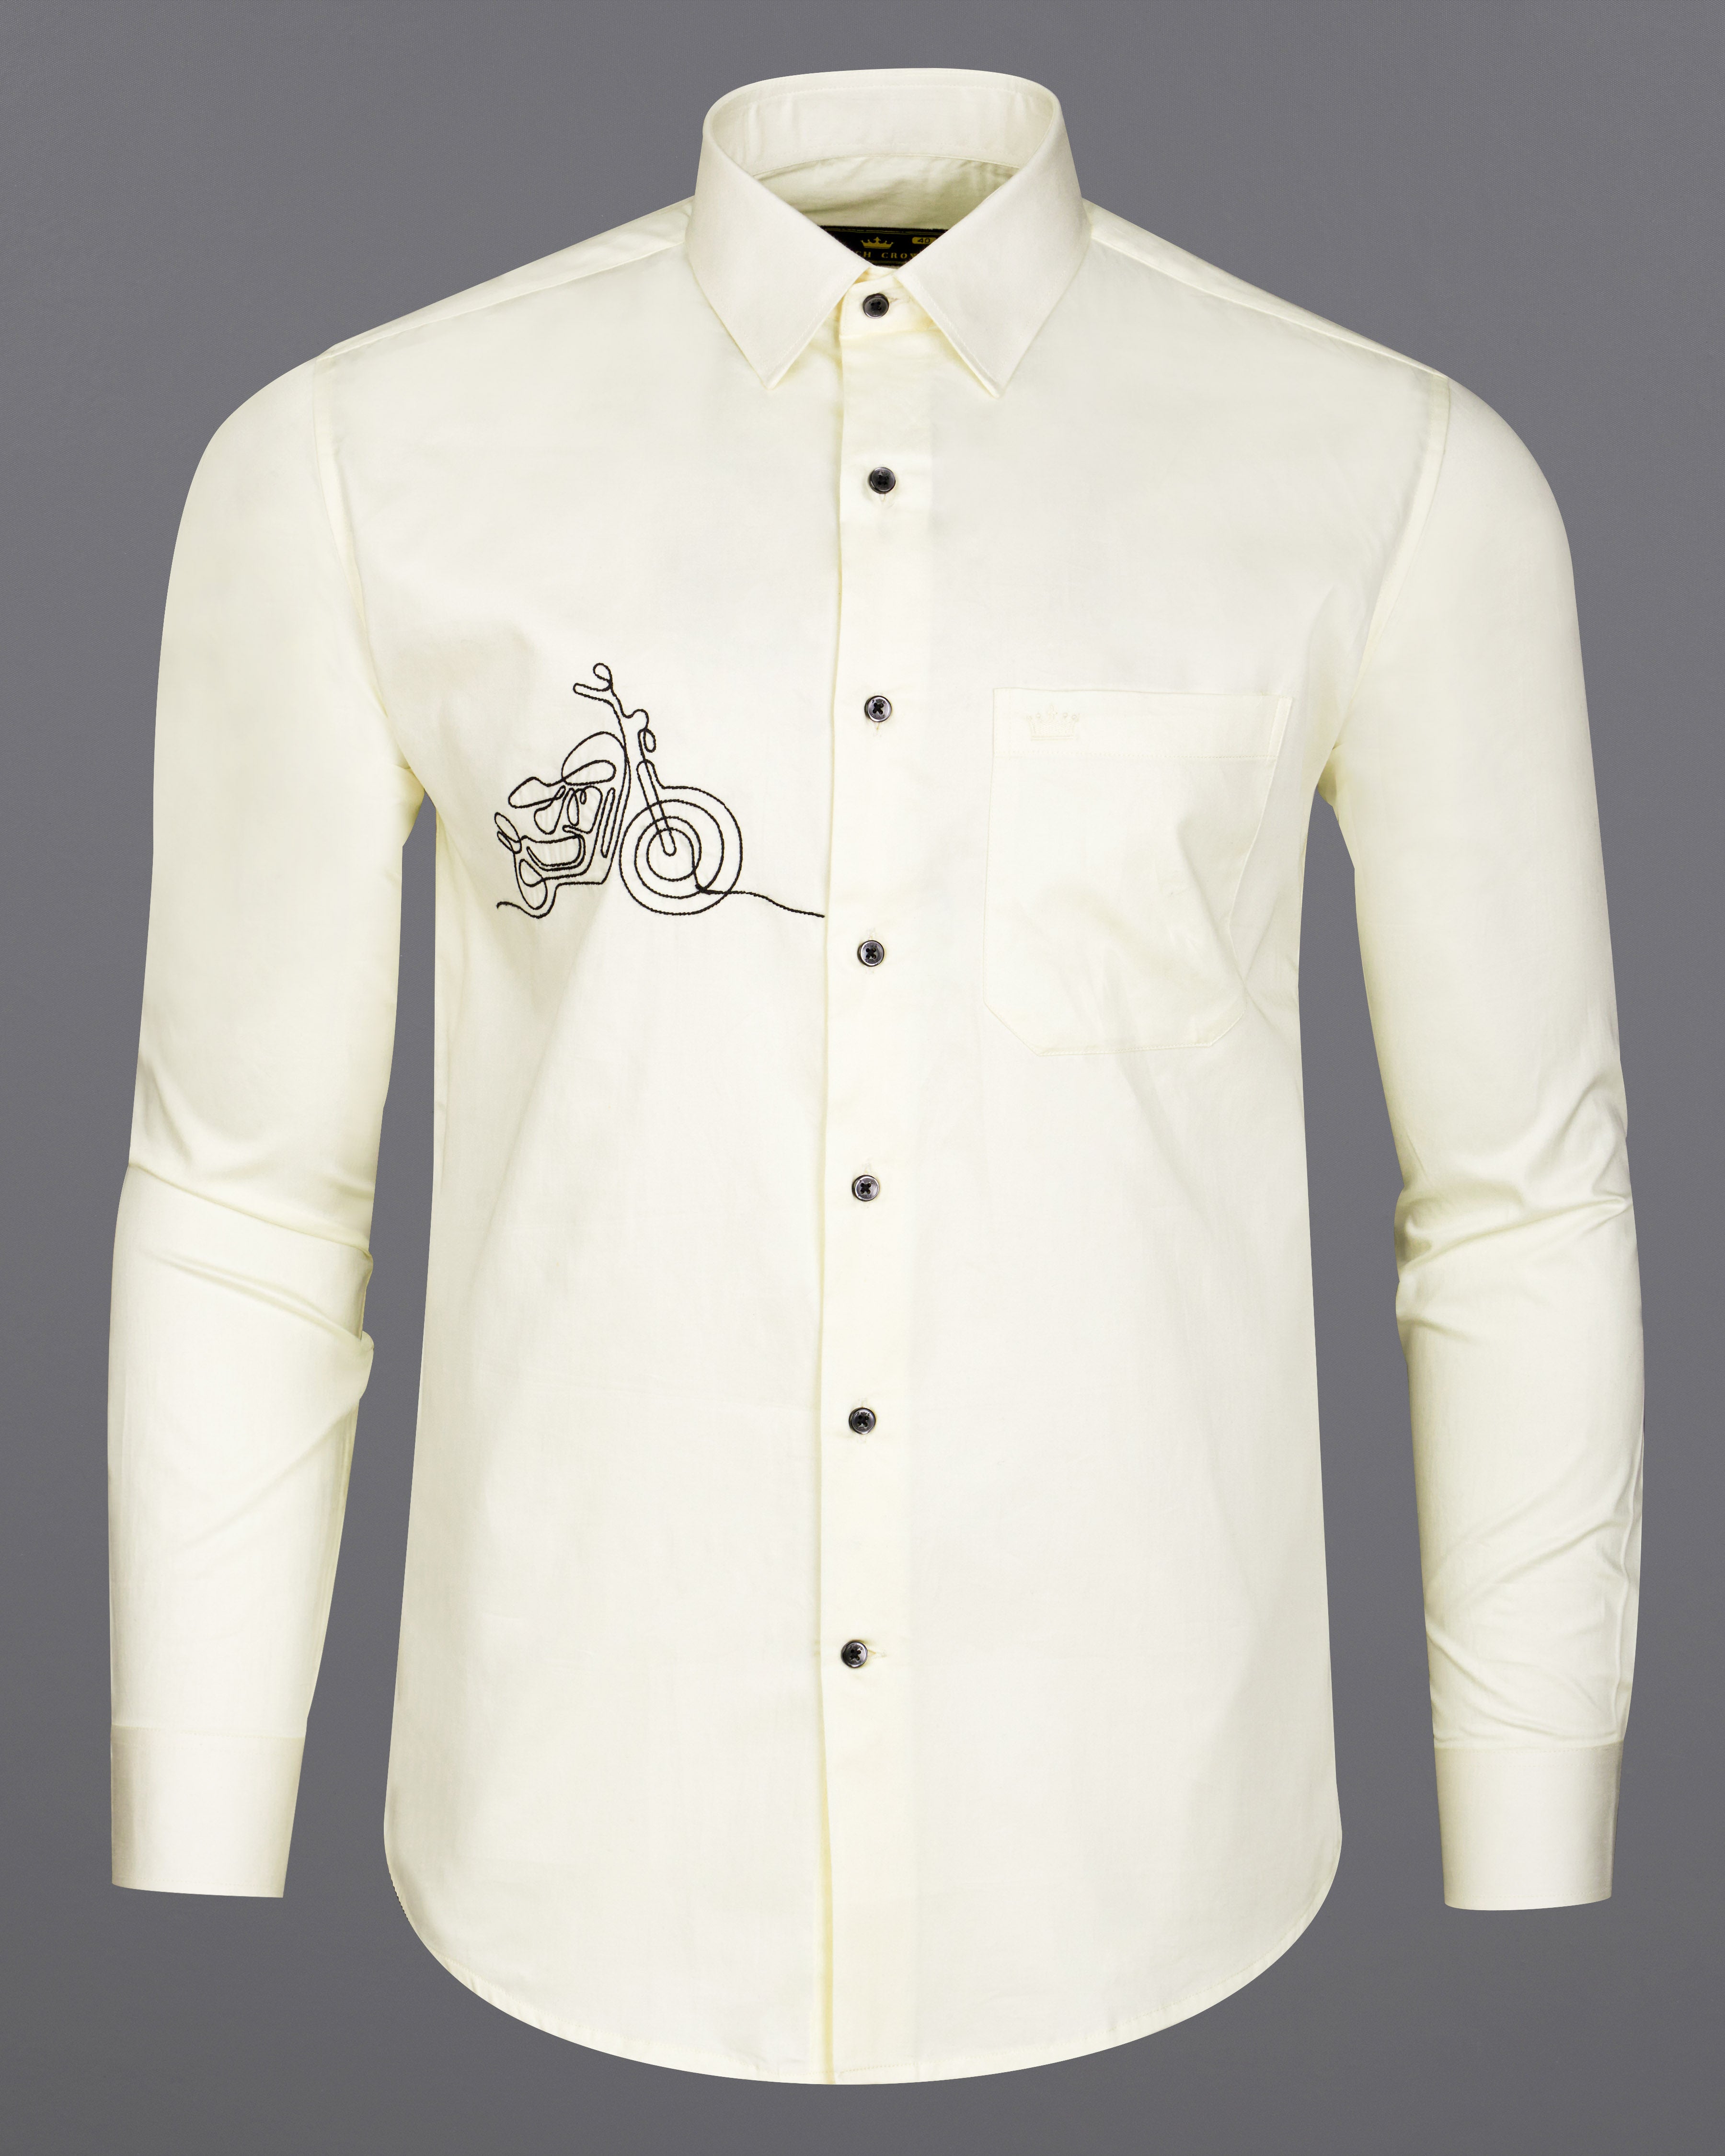 Apricot Yellow Bike Embroidered Super Soft Premium Cotton Shirt  8817-BLK-E014-38,8817-BLK-E014-H-38,8817-BLK-E014-39,8817-BLK-E014-H-39,8817-BLK-E014-40,8817-BLK-E014-H-40,8817-BLK-E014-42,8817-BLK-E014-H-42,8817-BLK-E014-44,8817-BLK-E014-H-44,8817-BLK-E014-46,8817-BLK-E014-H-46,8817-BLK-E014-48,8817-BLK-E014-H-48,8817-BLK-E014-50,8817-BLK-E014-H-50,8817-BLK-E014-52,8817-BLK-E014-H-52